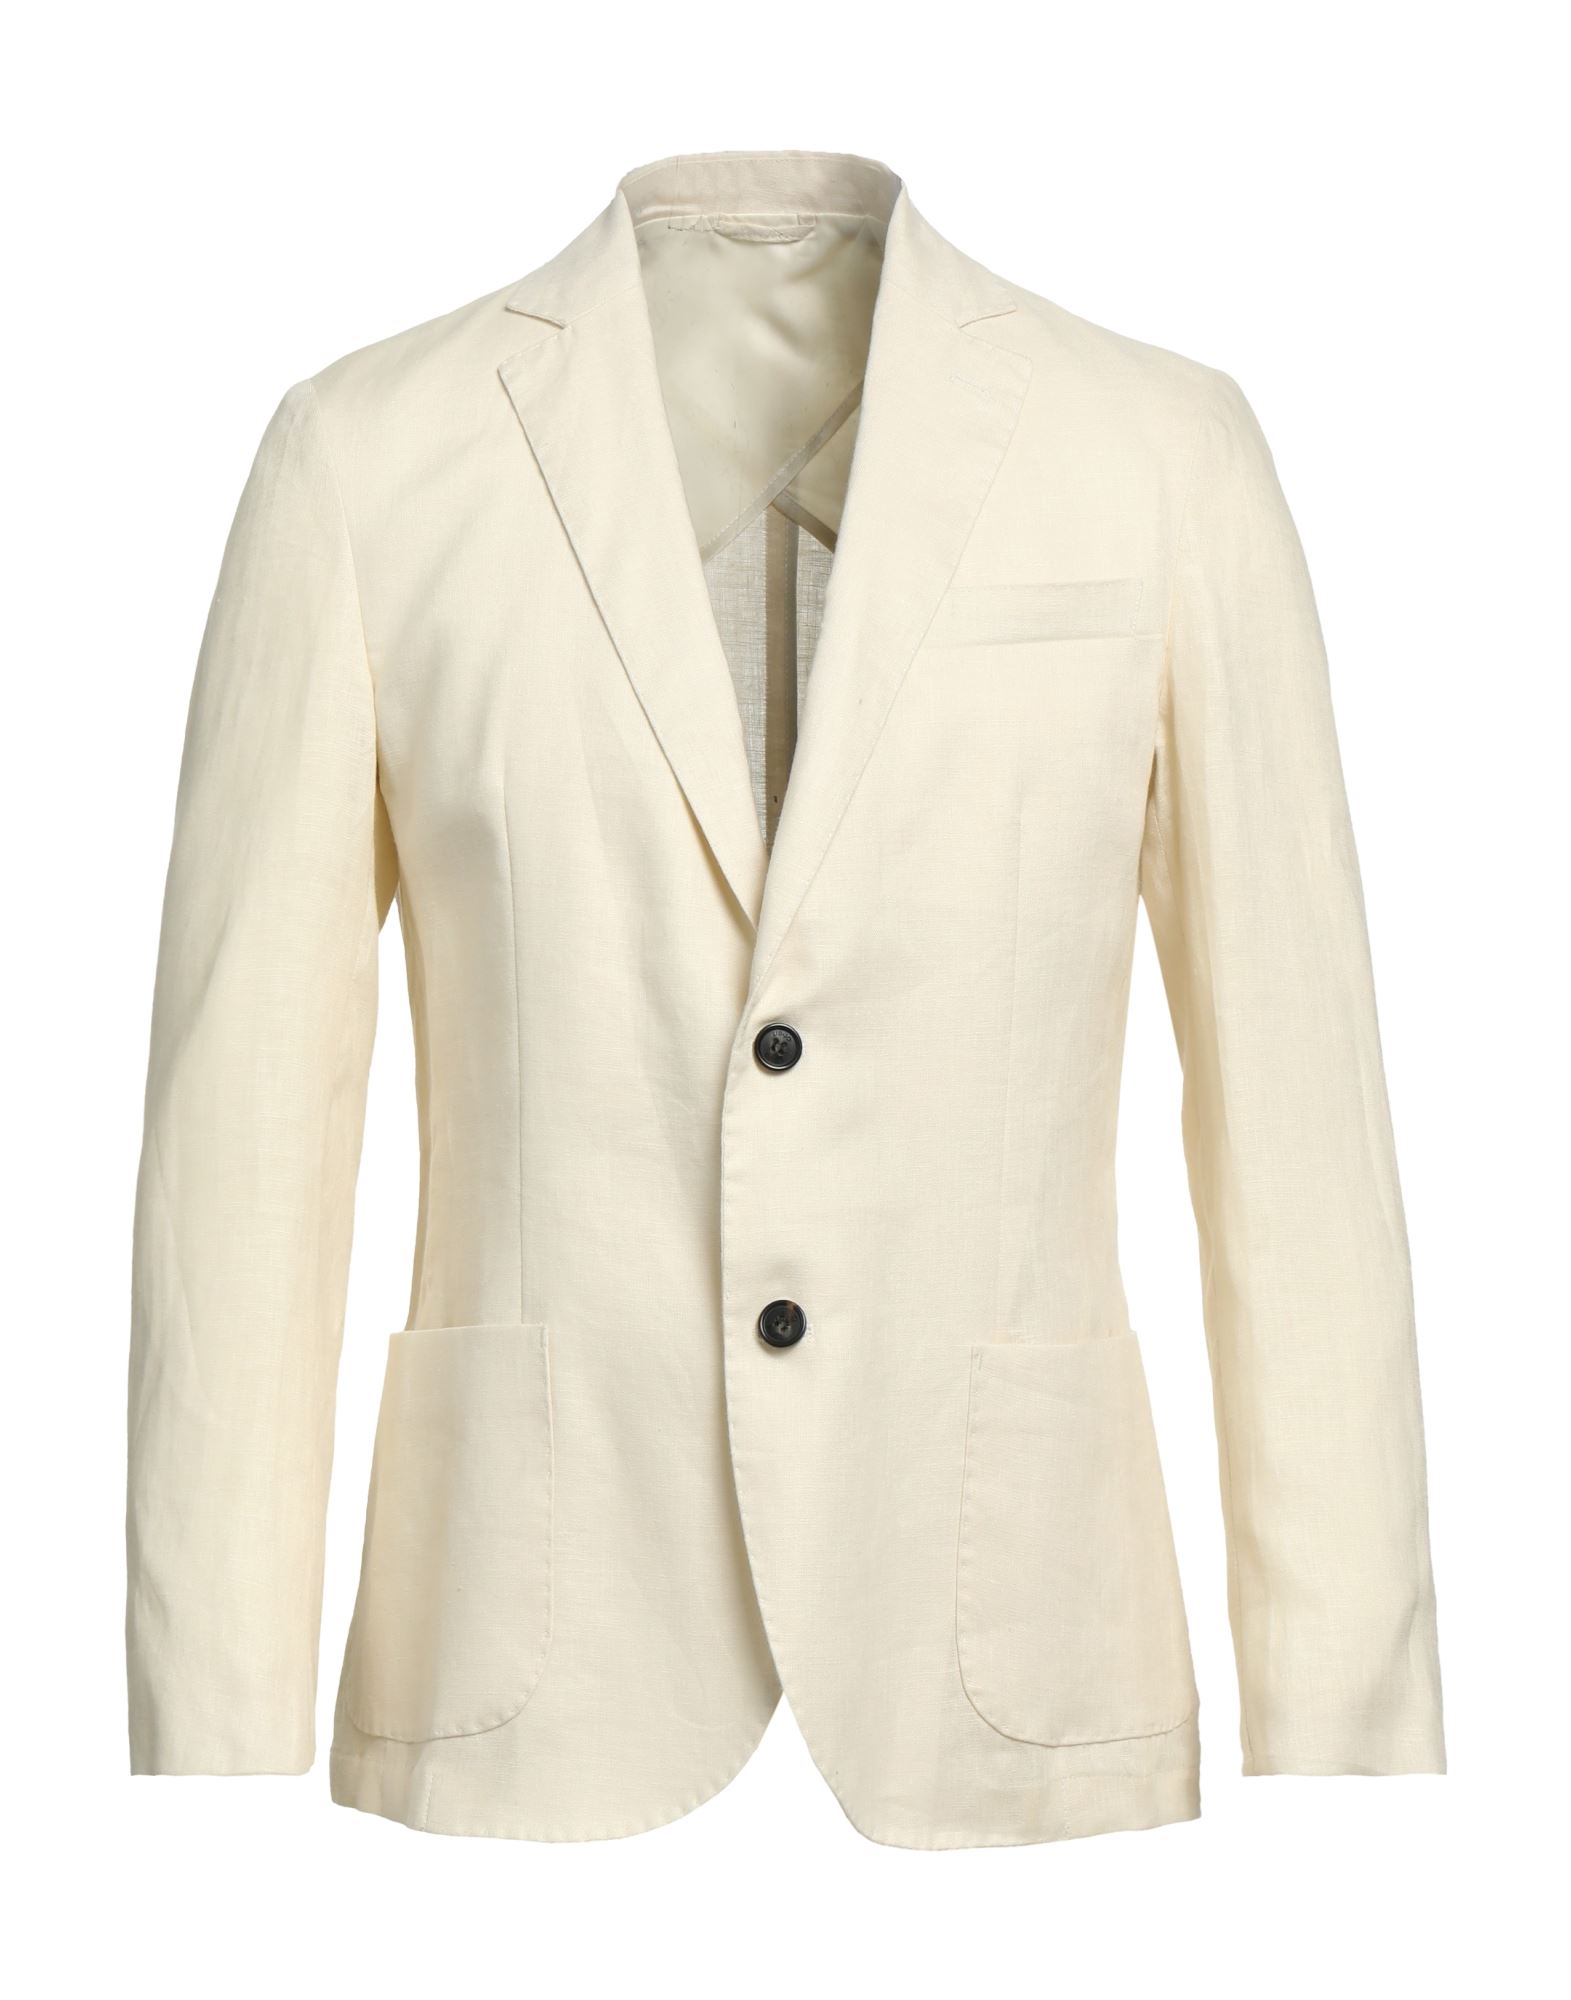 Liu •jo Man Liu Jo Man Suit Jackets In White